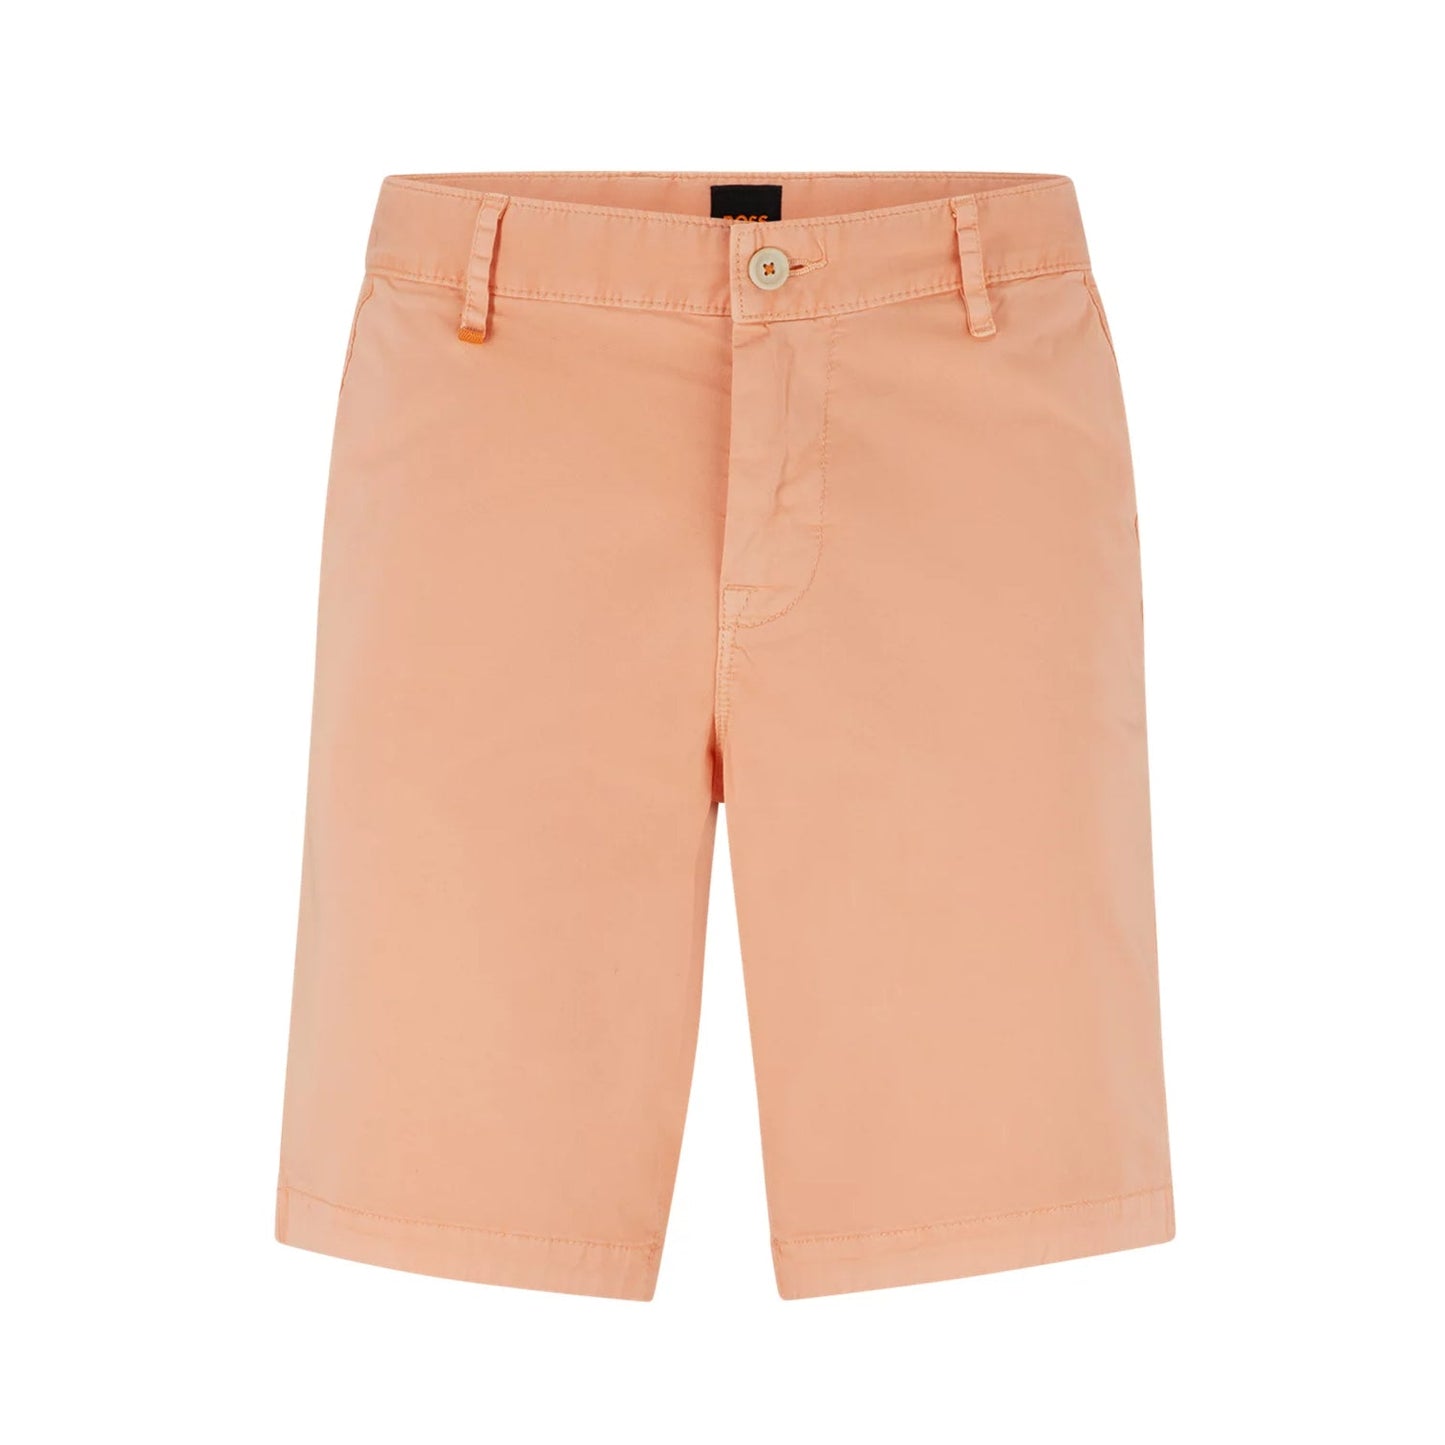 Boss Orange 50489112 Schino-Slim Shorts - 833 Light Orange - Escape Menswear